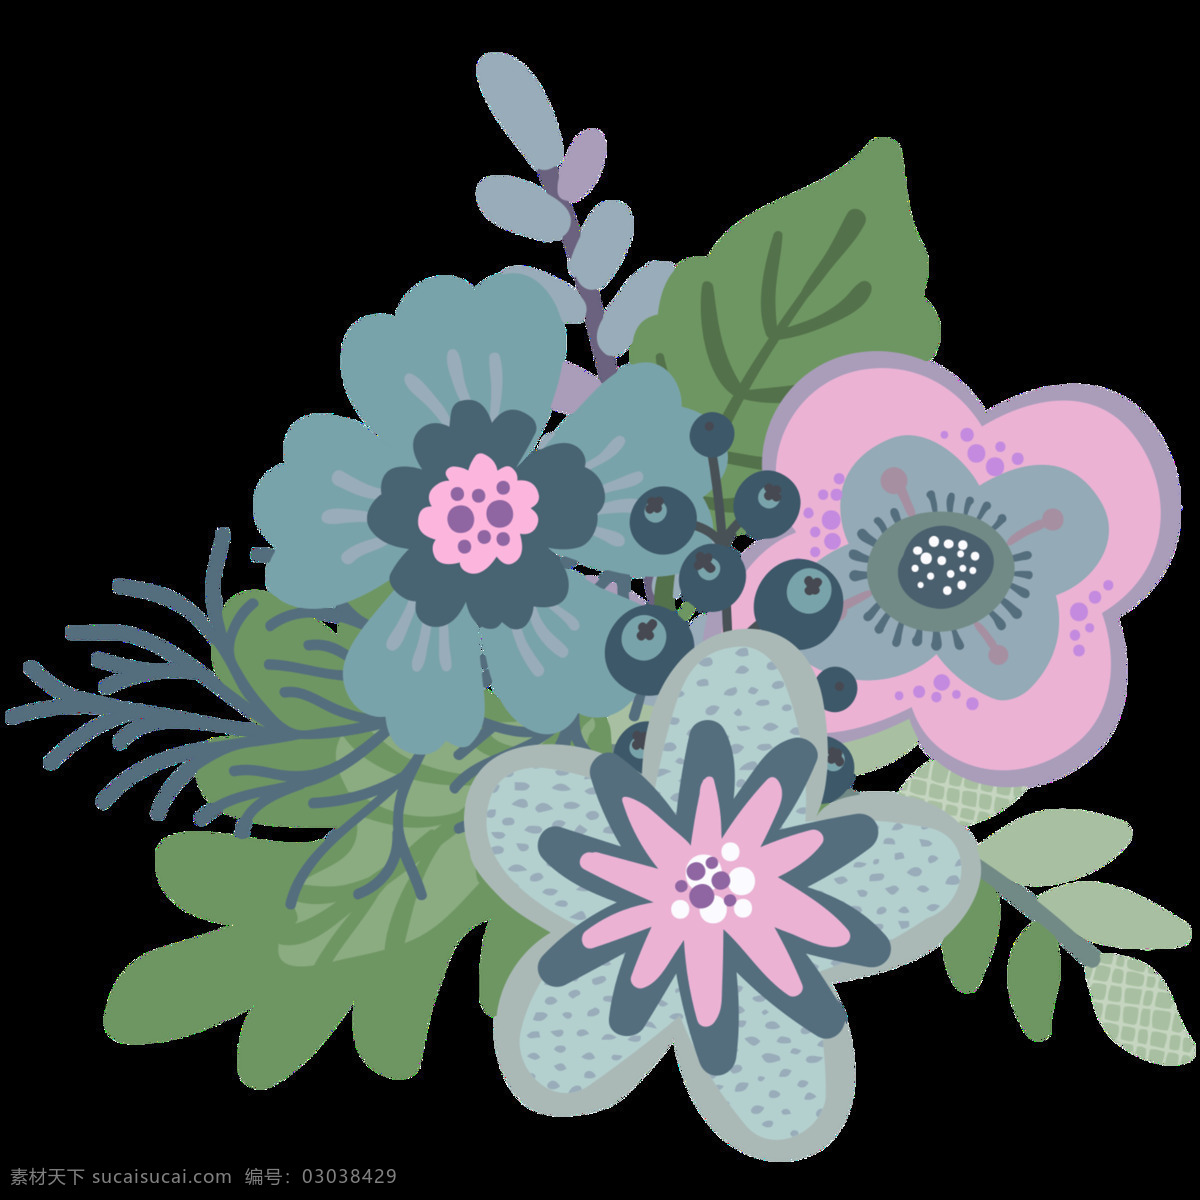 花团锦簇 植物 花卉 透明 卡通 抠图专用 装饰 设计素材